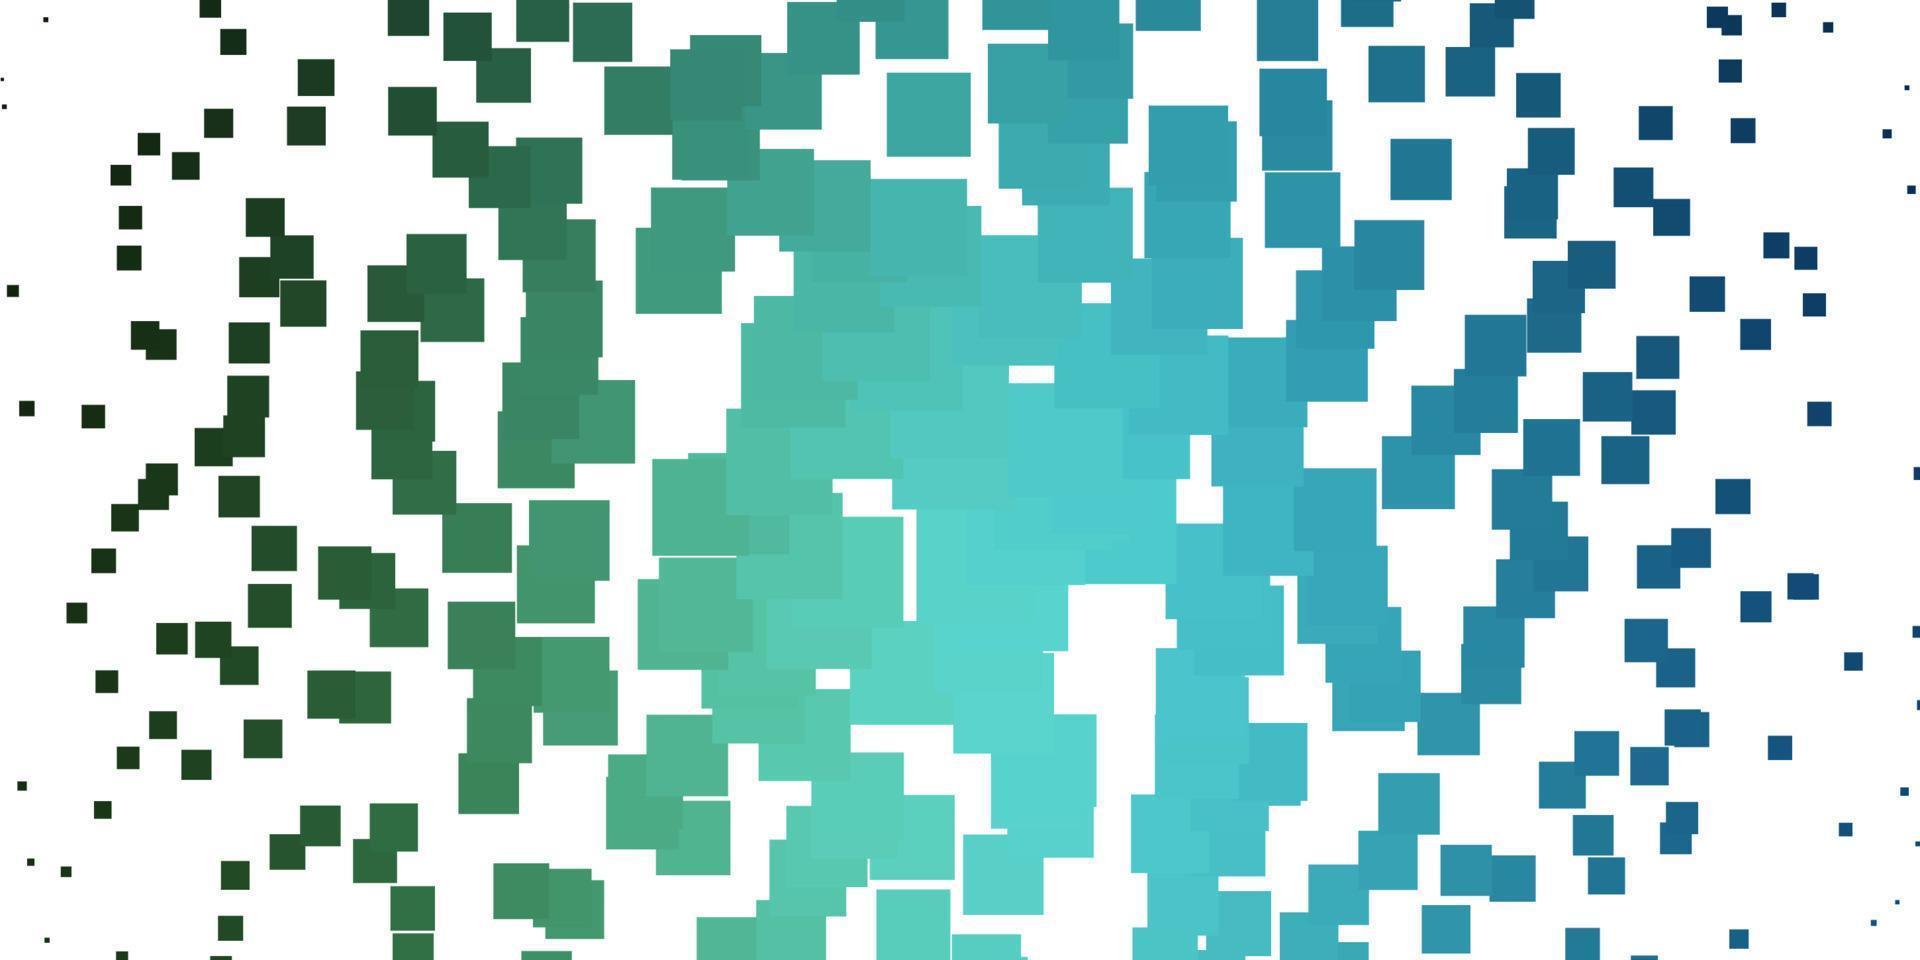 de fundo vector azul e verde claro em estilo poligonal.